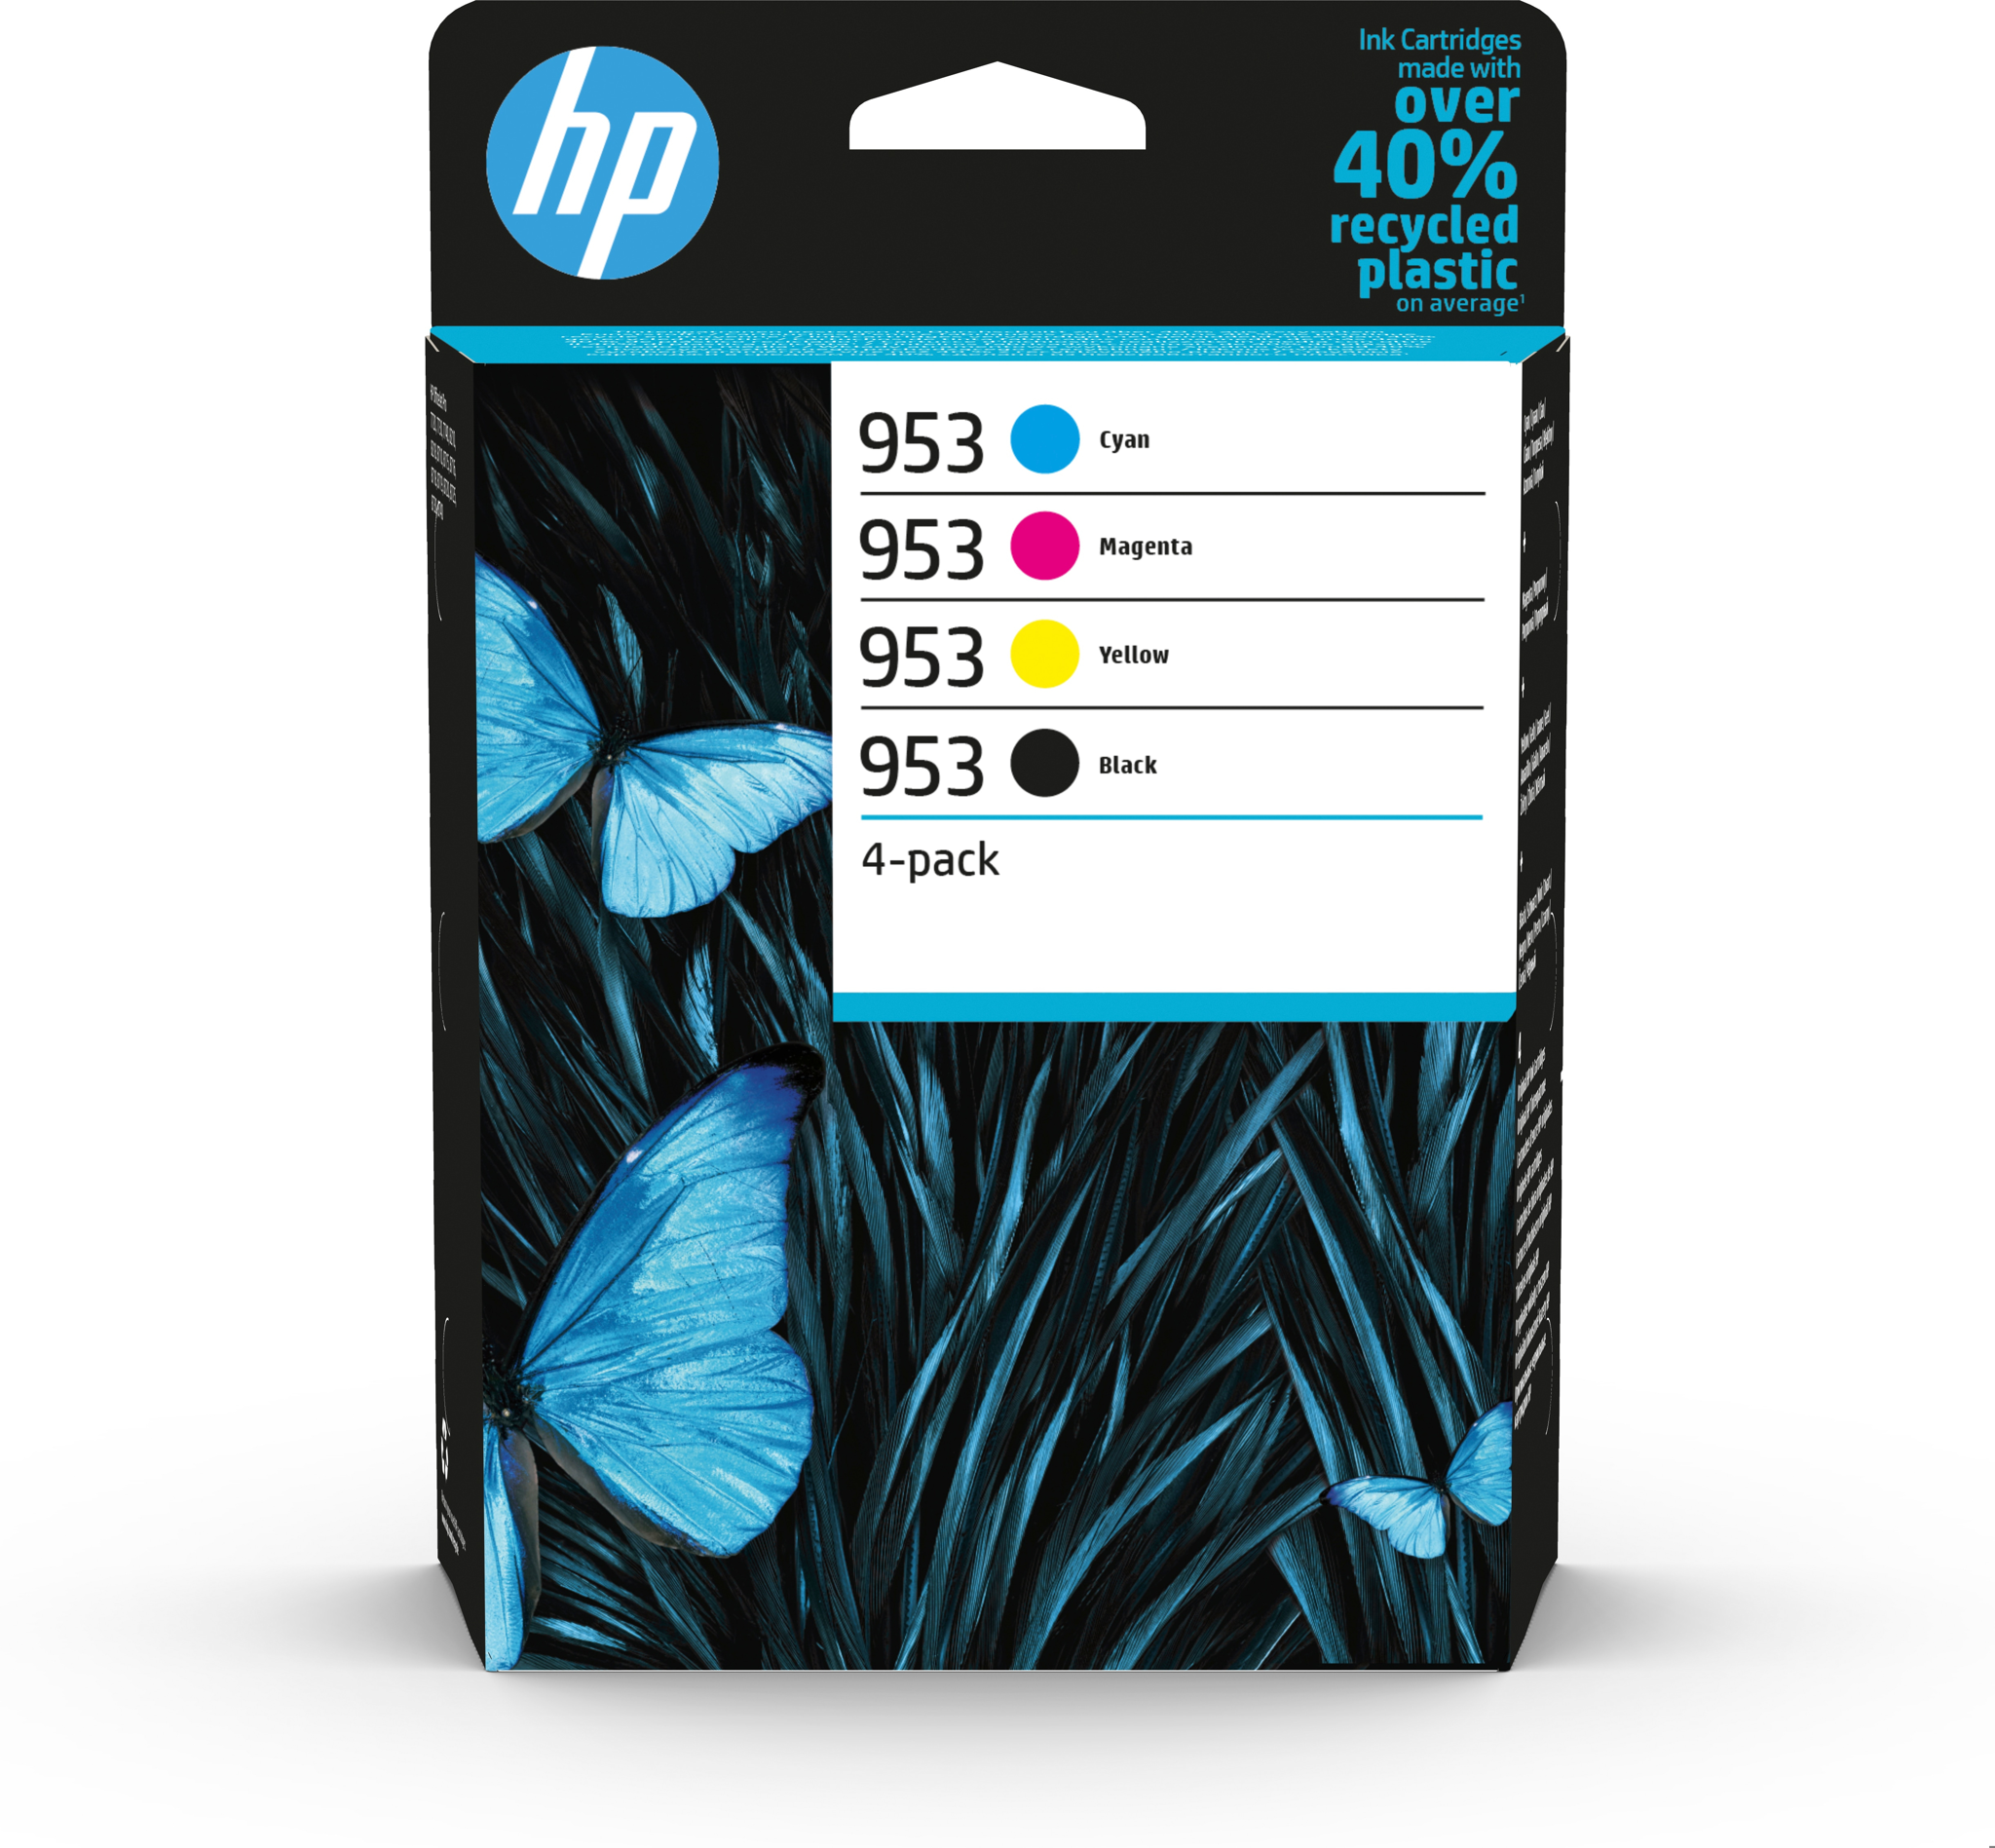 Bild von HP 953 - Original - Tinte auf Pigmentbasis - Schwarz - Cyan - Magenta - Gelb - HP - Kombi-Packung - OfficeJet Pro 7740 - 8710 - 8720 - 8725 - 8730 - 8740 HP OfficeJet Pro 8210 Printer - HP OfficeJet Pro...